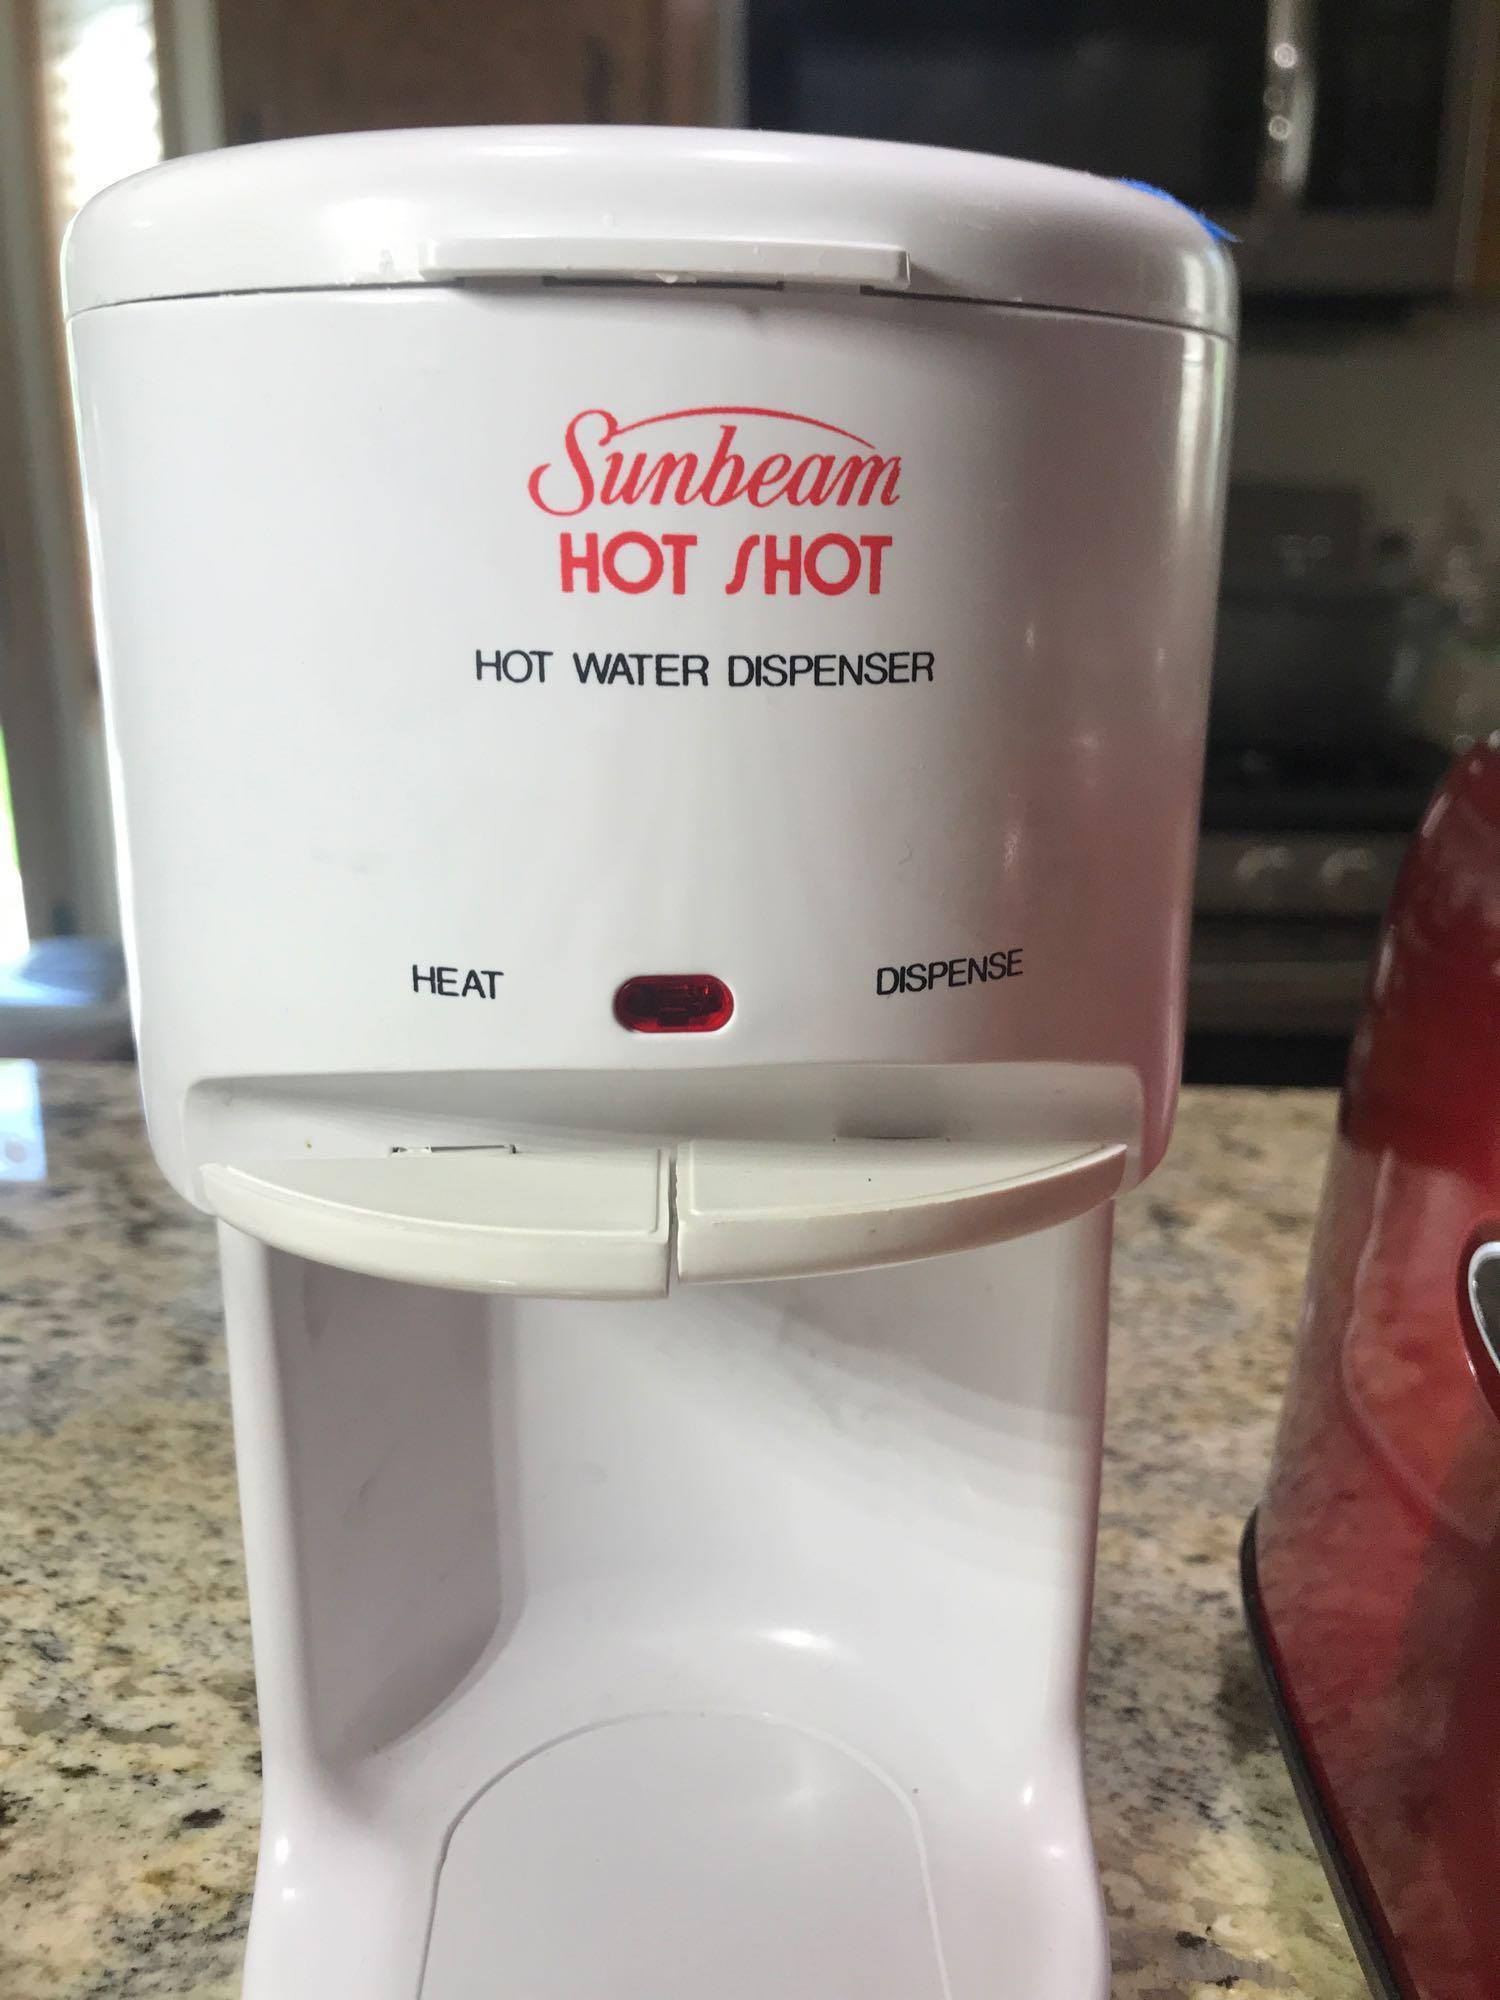 Sunbeam Hot Shot Hot Water Dispenser